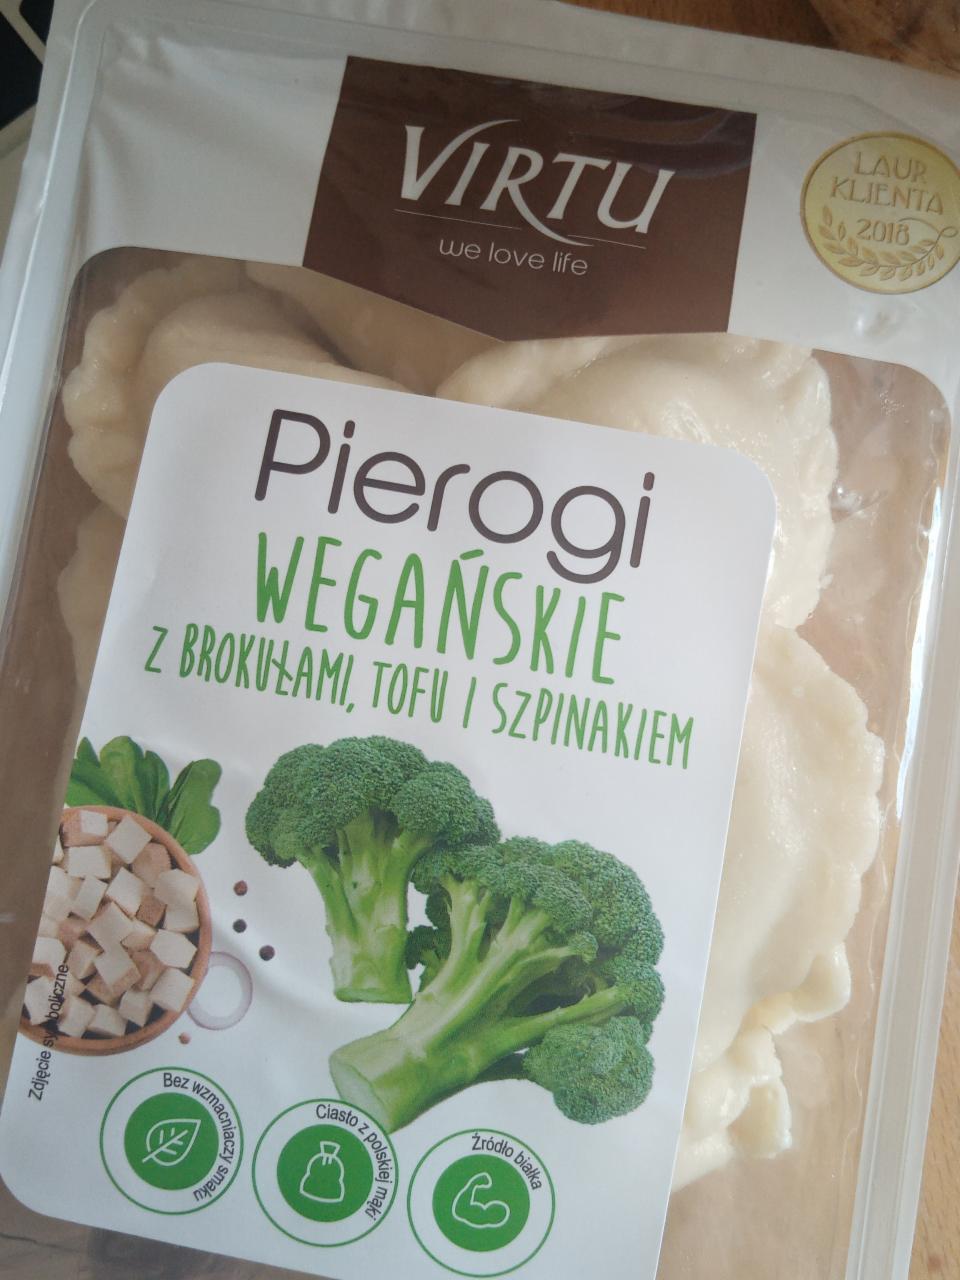 Zdjęcia - Pierogi wegańskie z brokułami tofu i szpinakiem Virtu